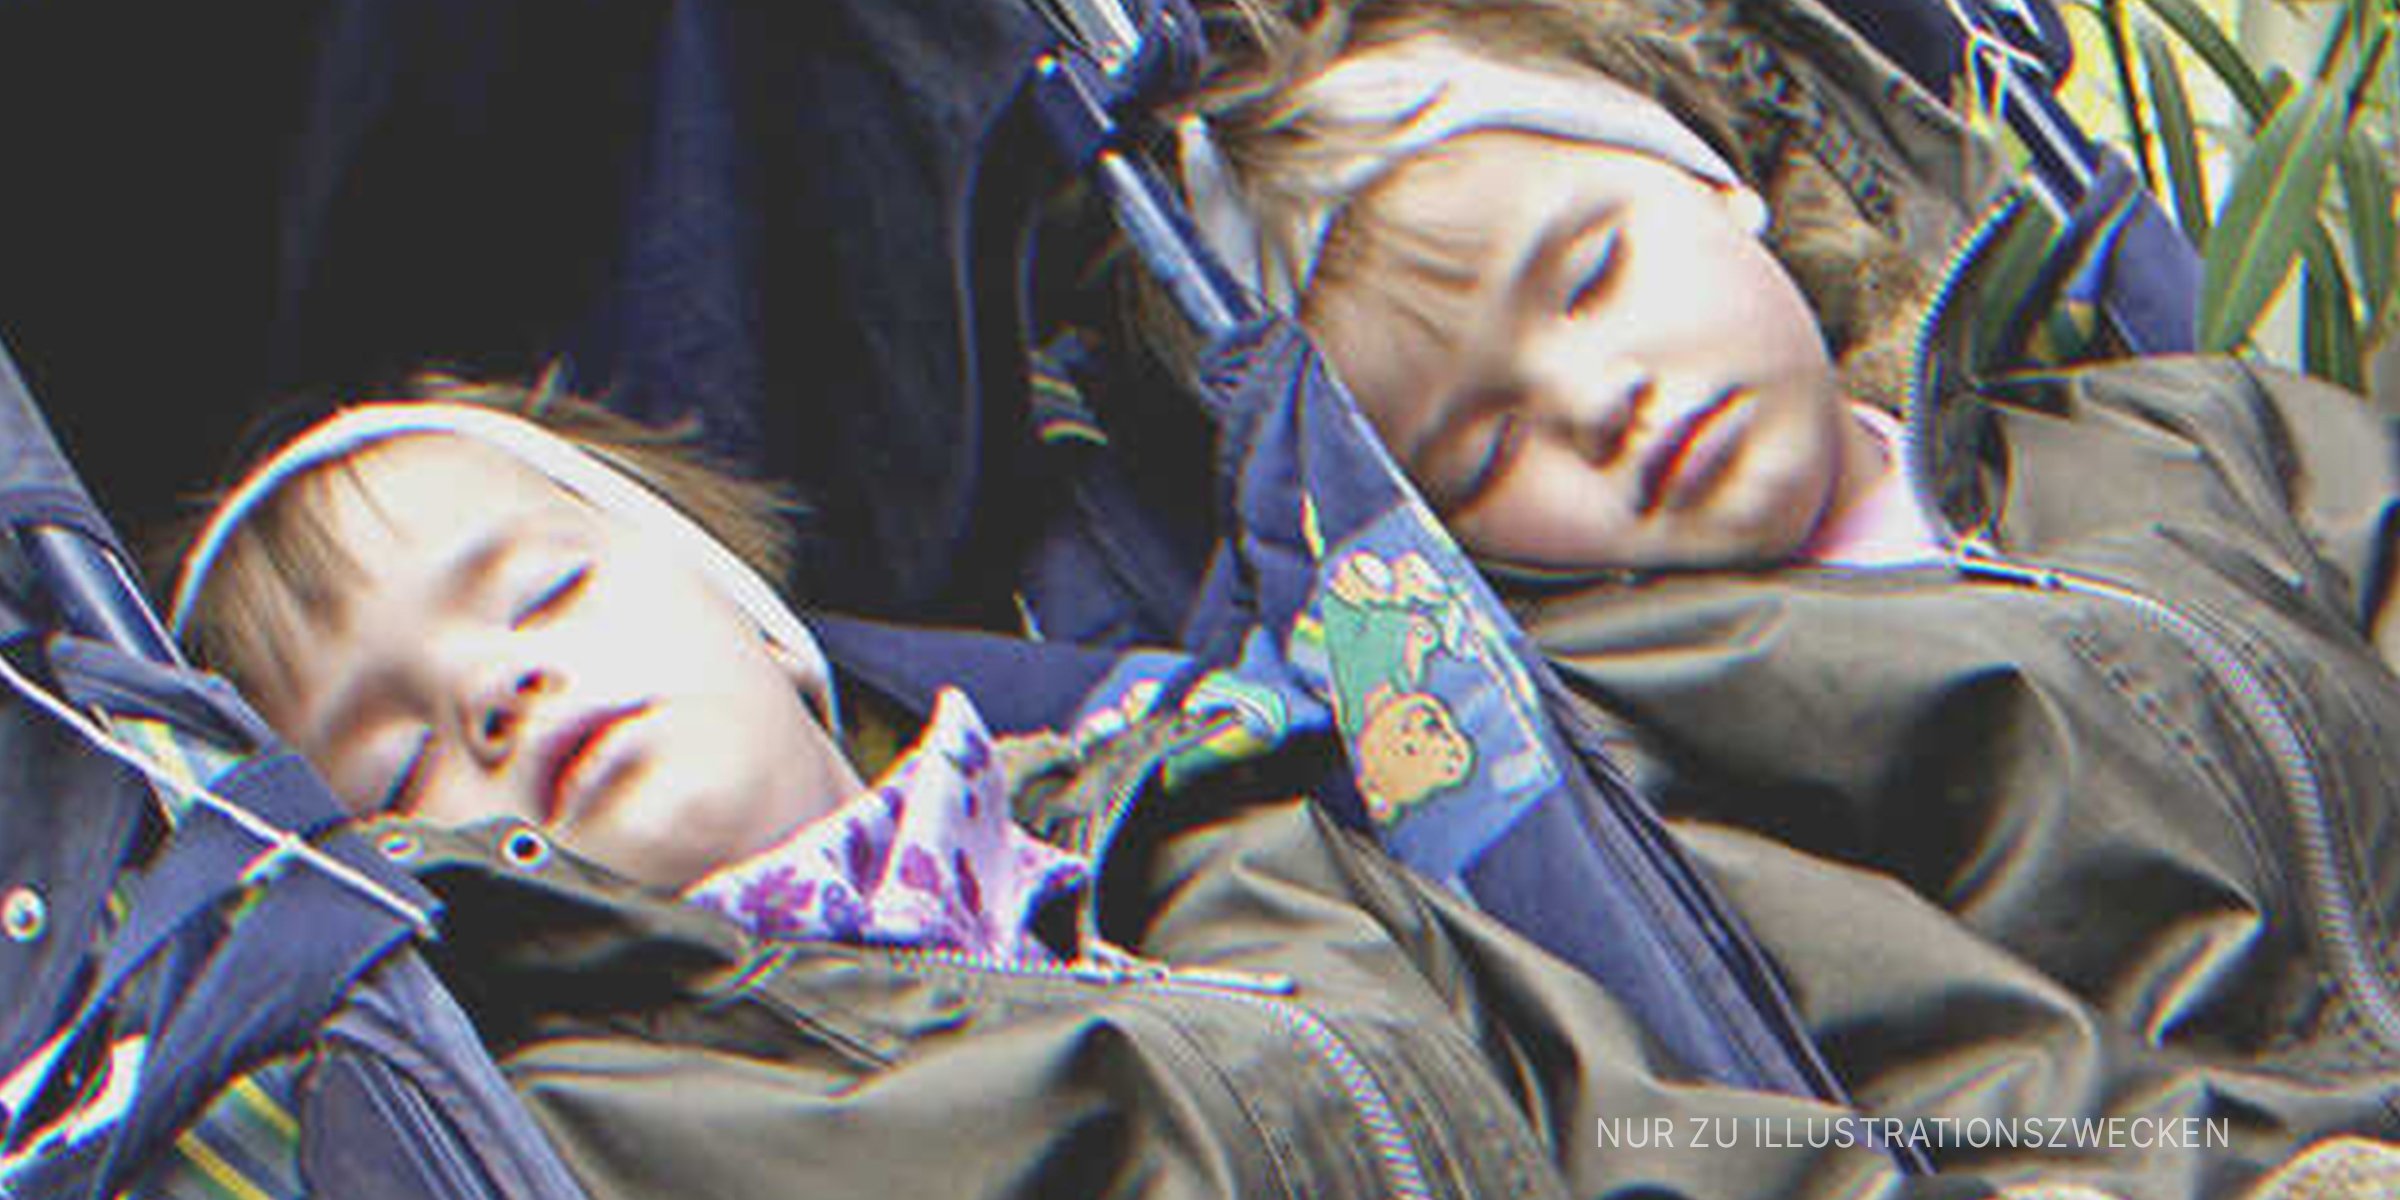 Zwillingsmädchen, die in einem Kinderwagen schlafen. | Quelle: Getty Images